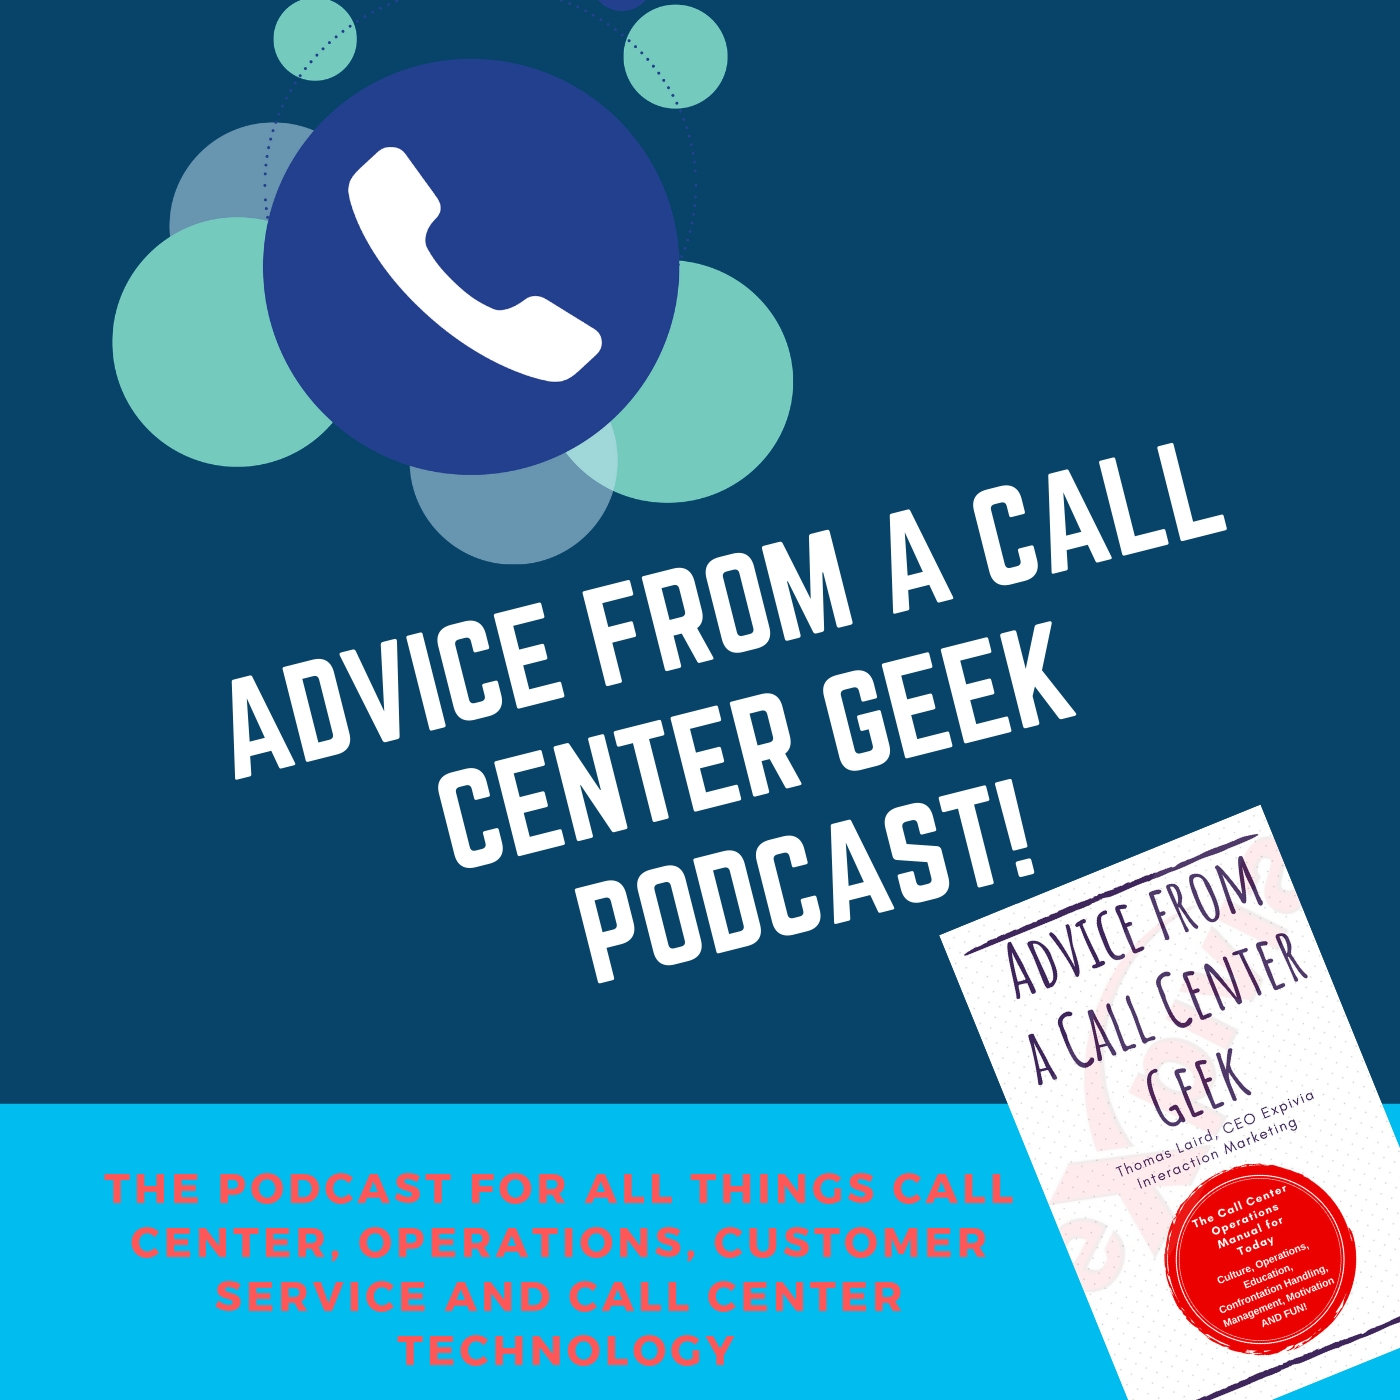 Call Center Geek